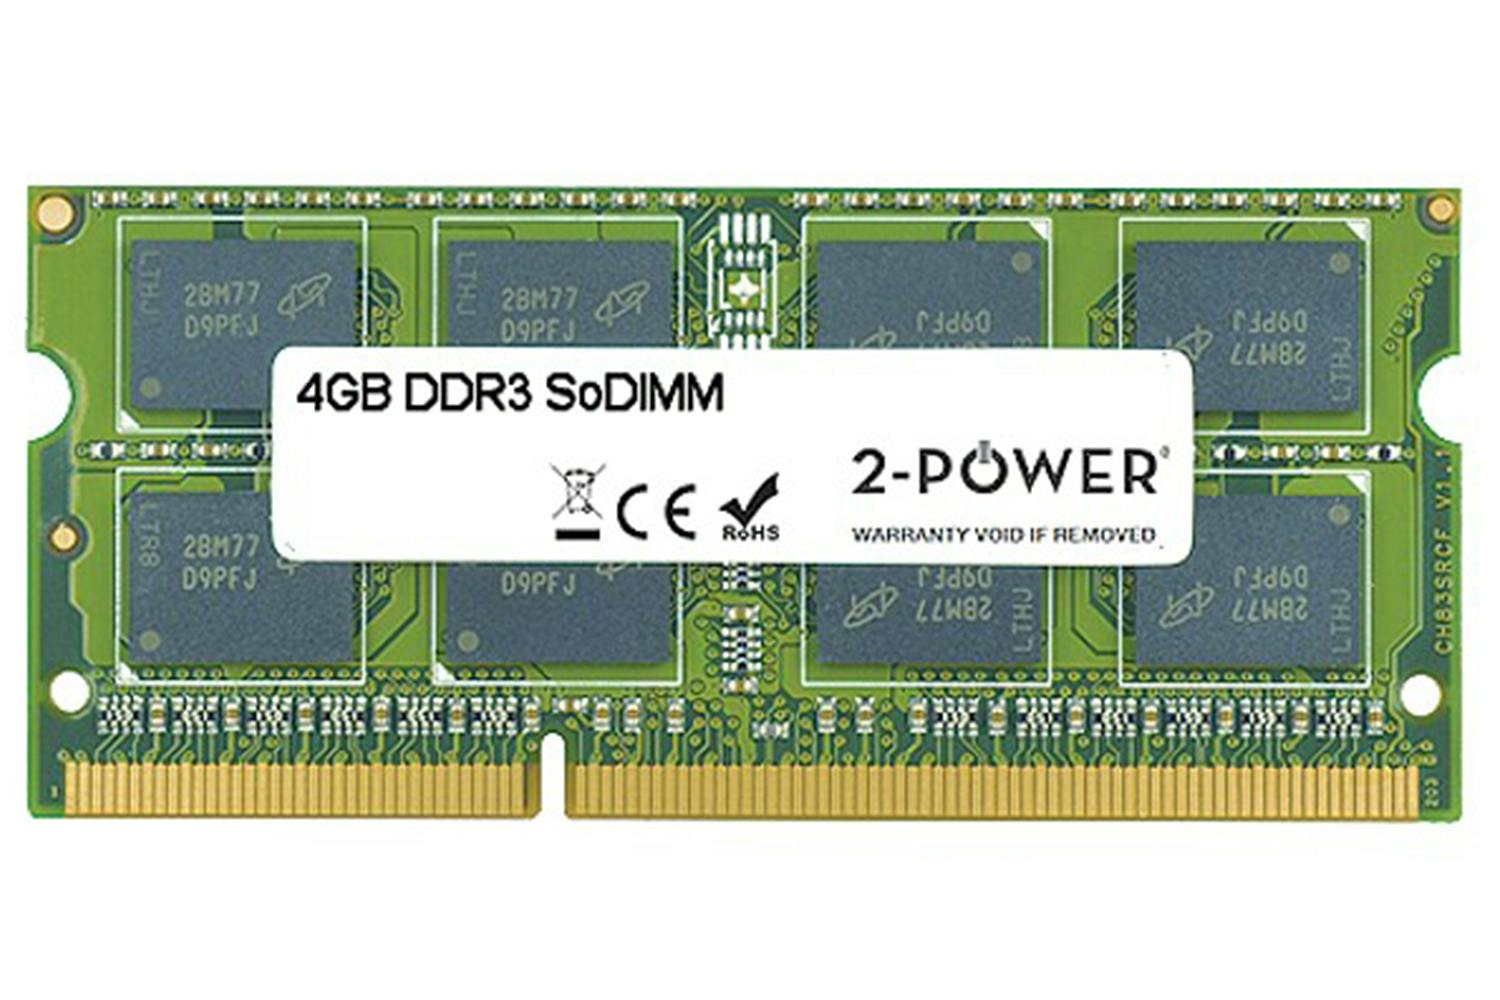 2-Power MultiSpeed 1066/1333/1600 MHz SoDIMM Memory Module | 4GB